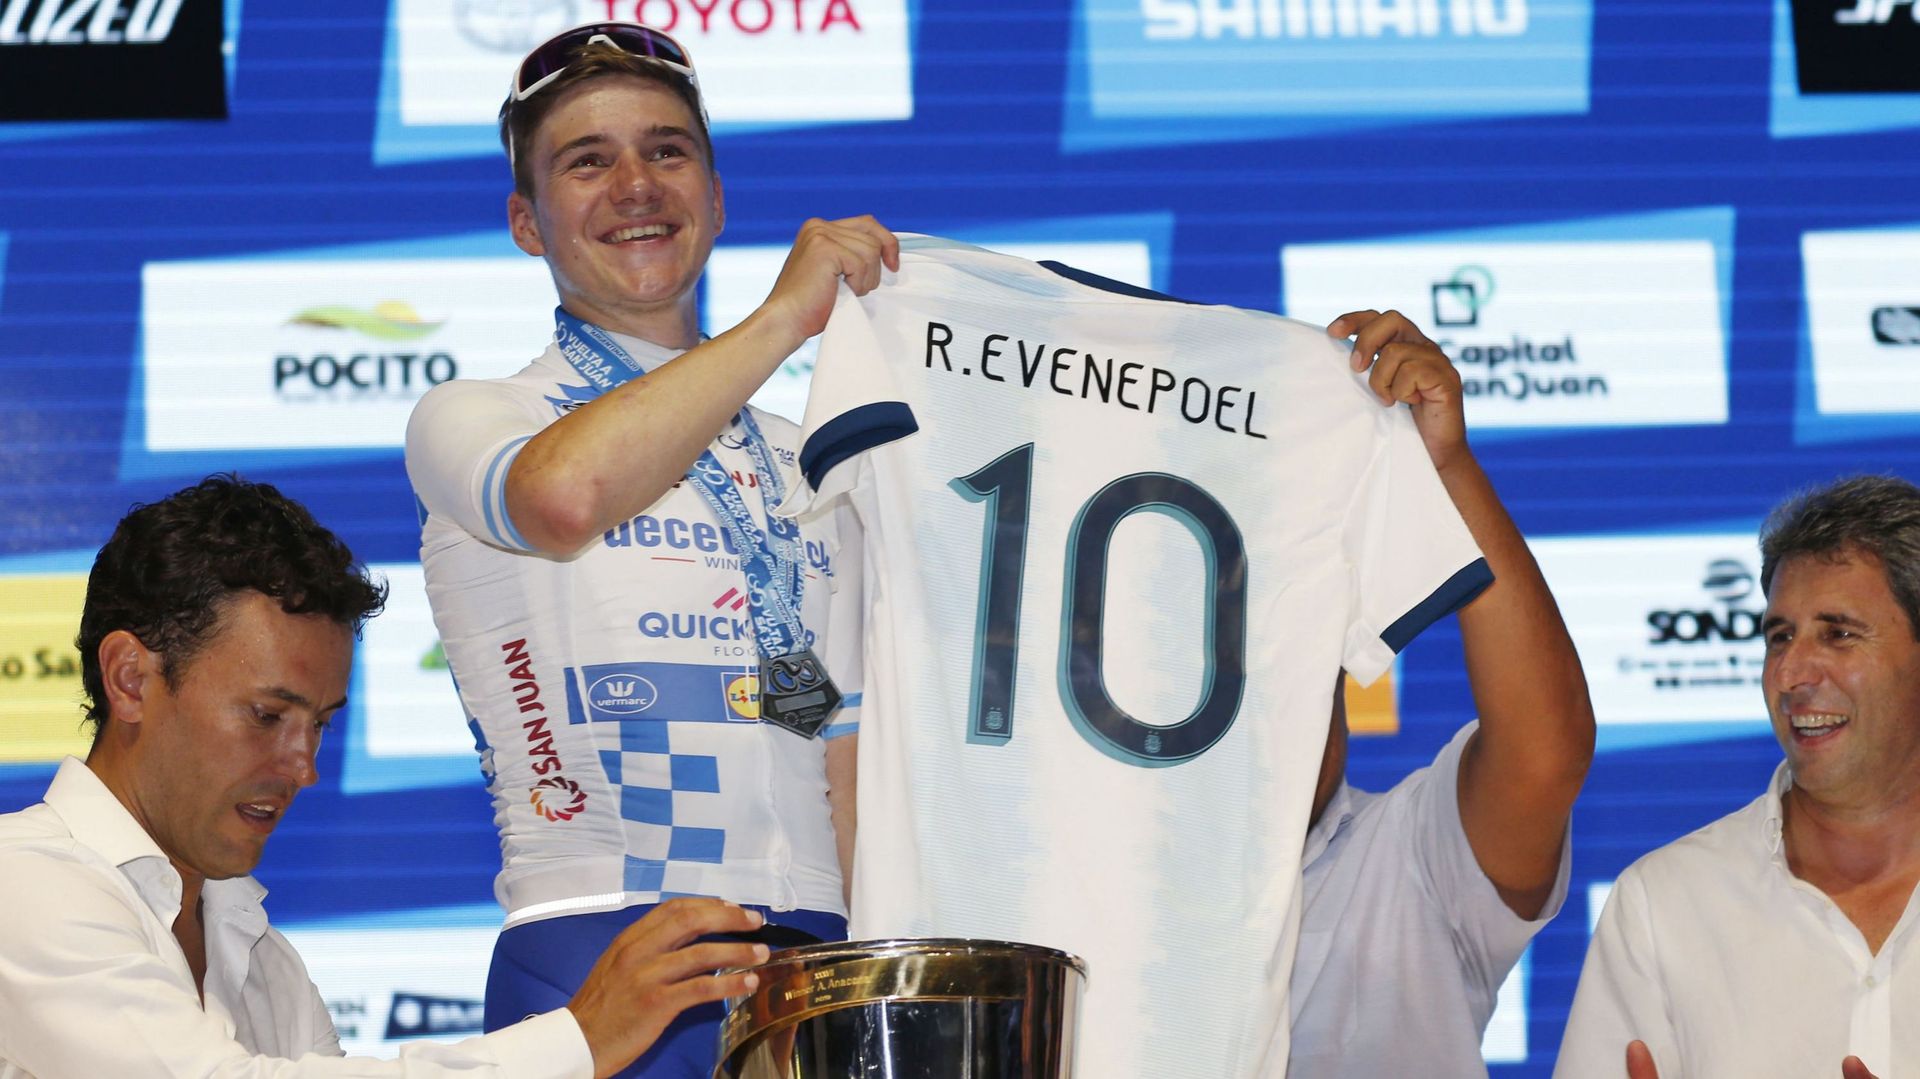 Remco Evenepoel vainqueur du Tour de San Juan